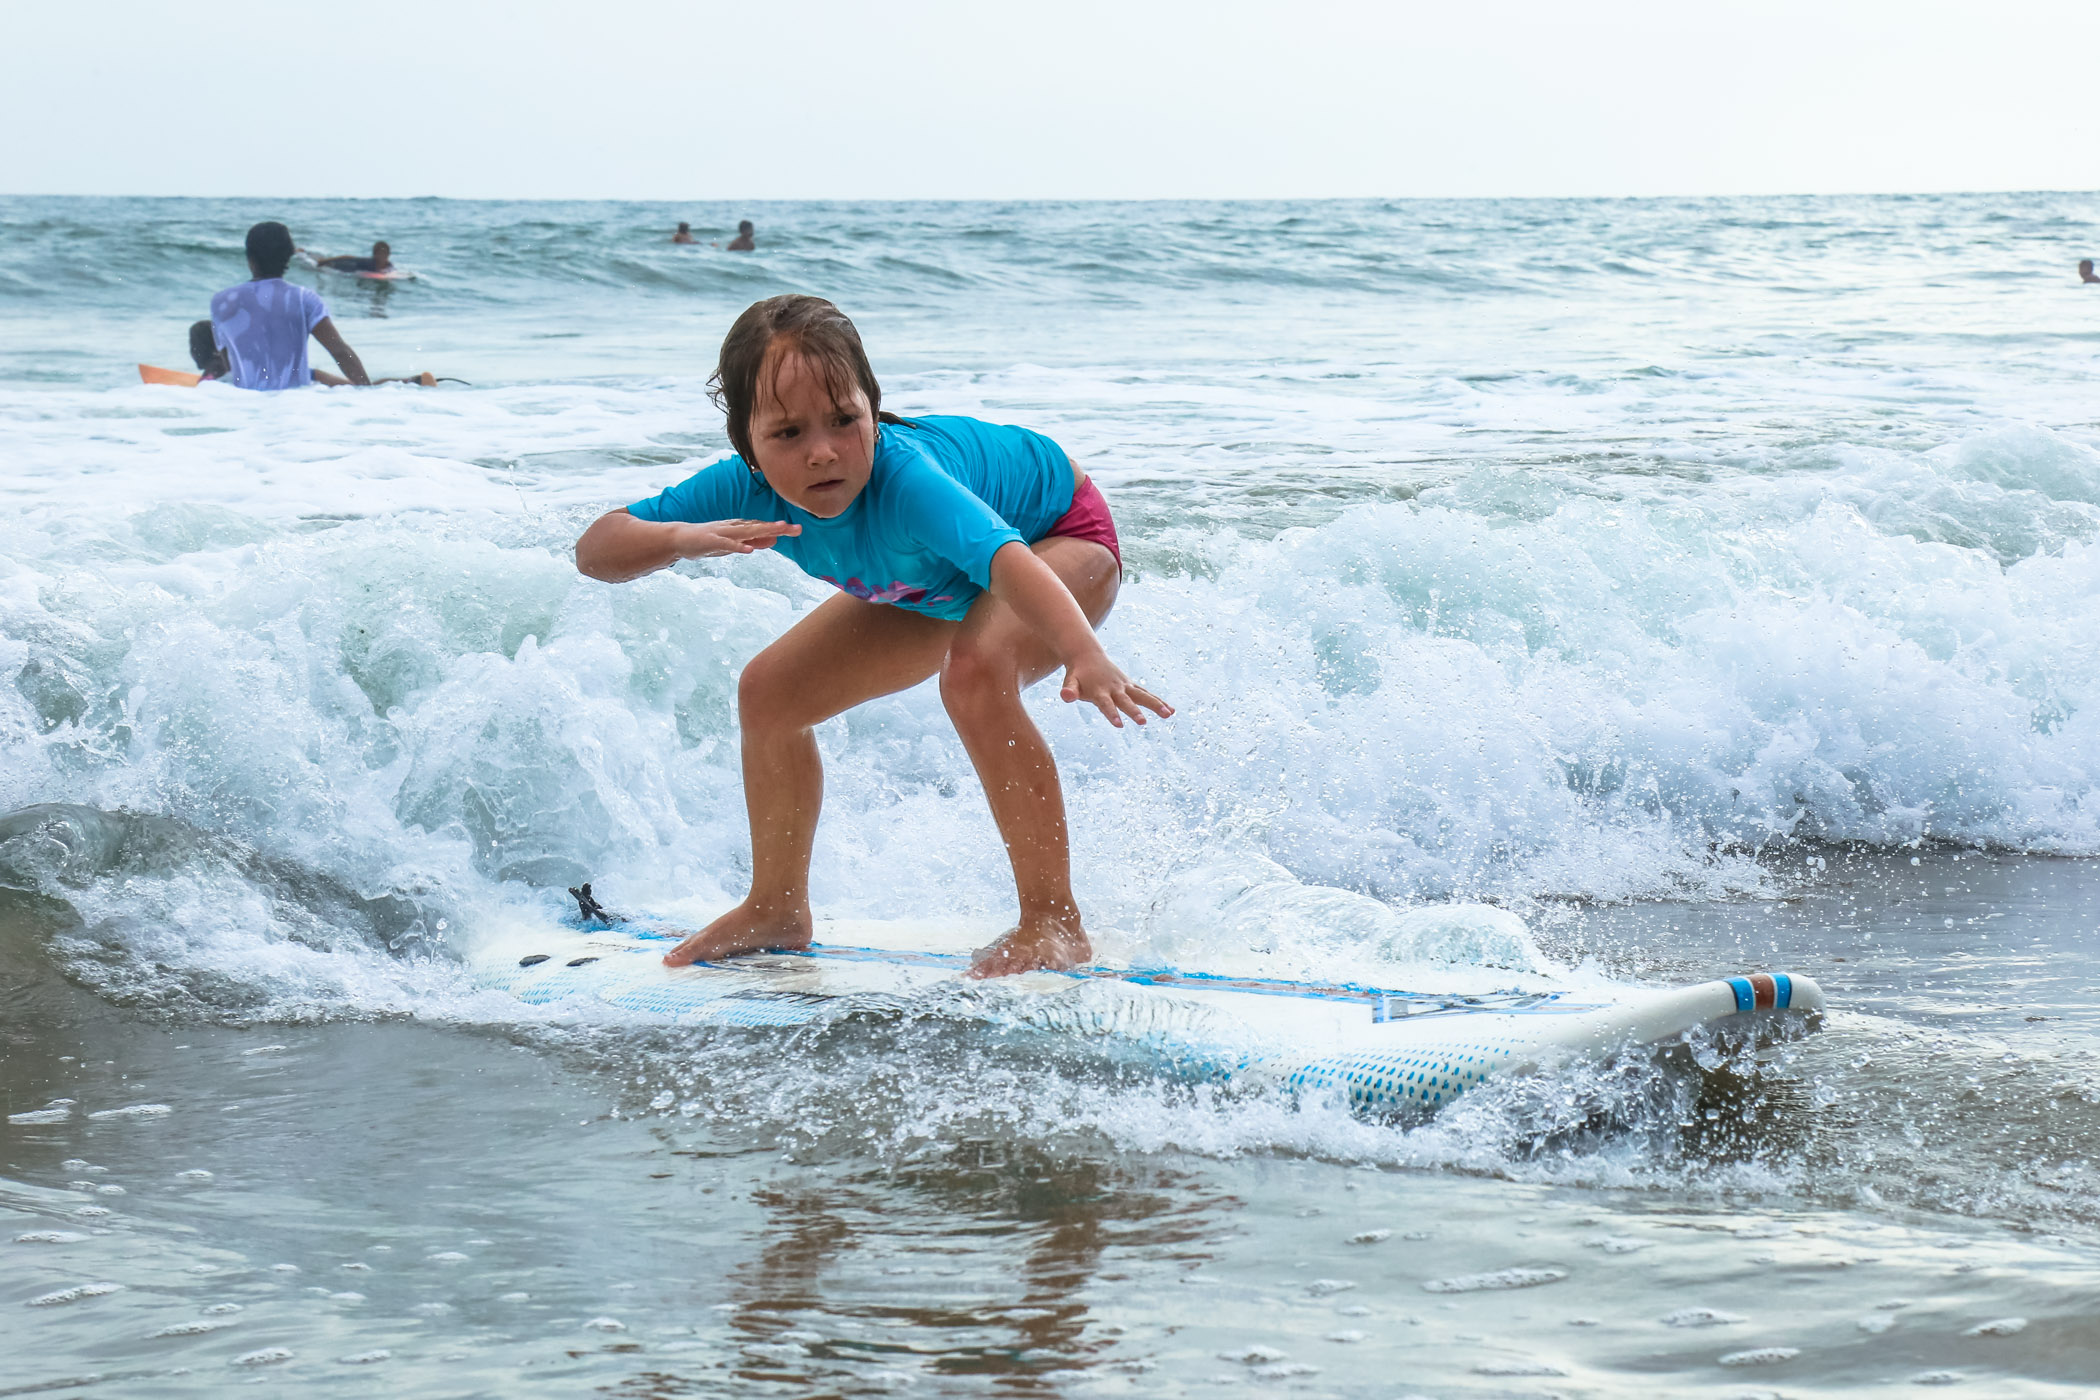 Close up of young Ecuadorian girl riding a wave into shore